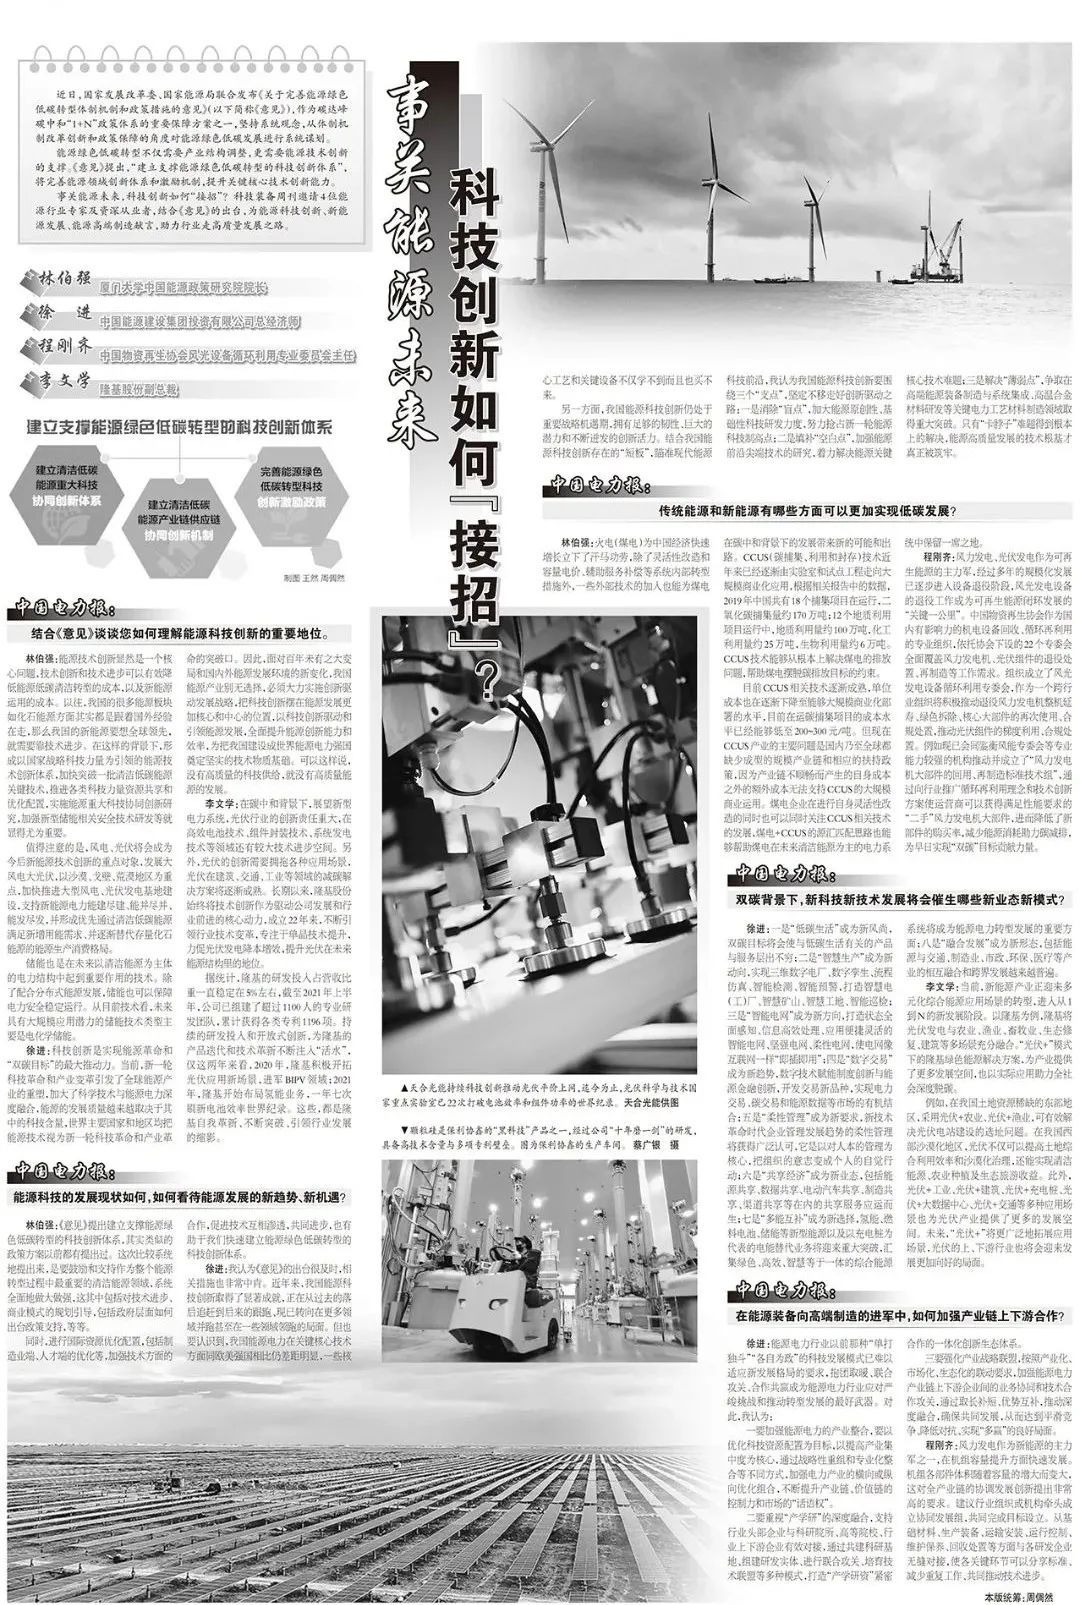 《中国电力报》就能源科技创新等话题邀请隆基献言